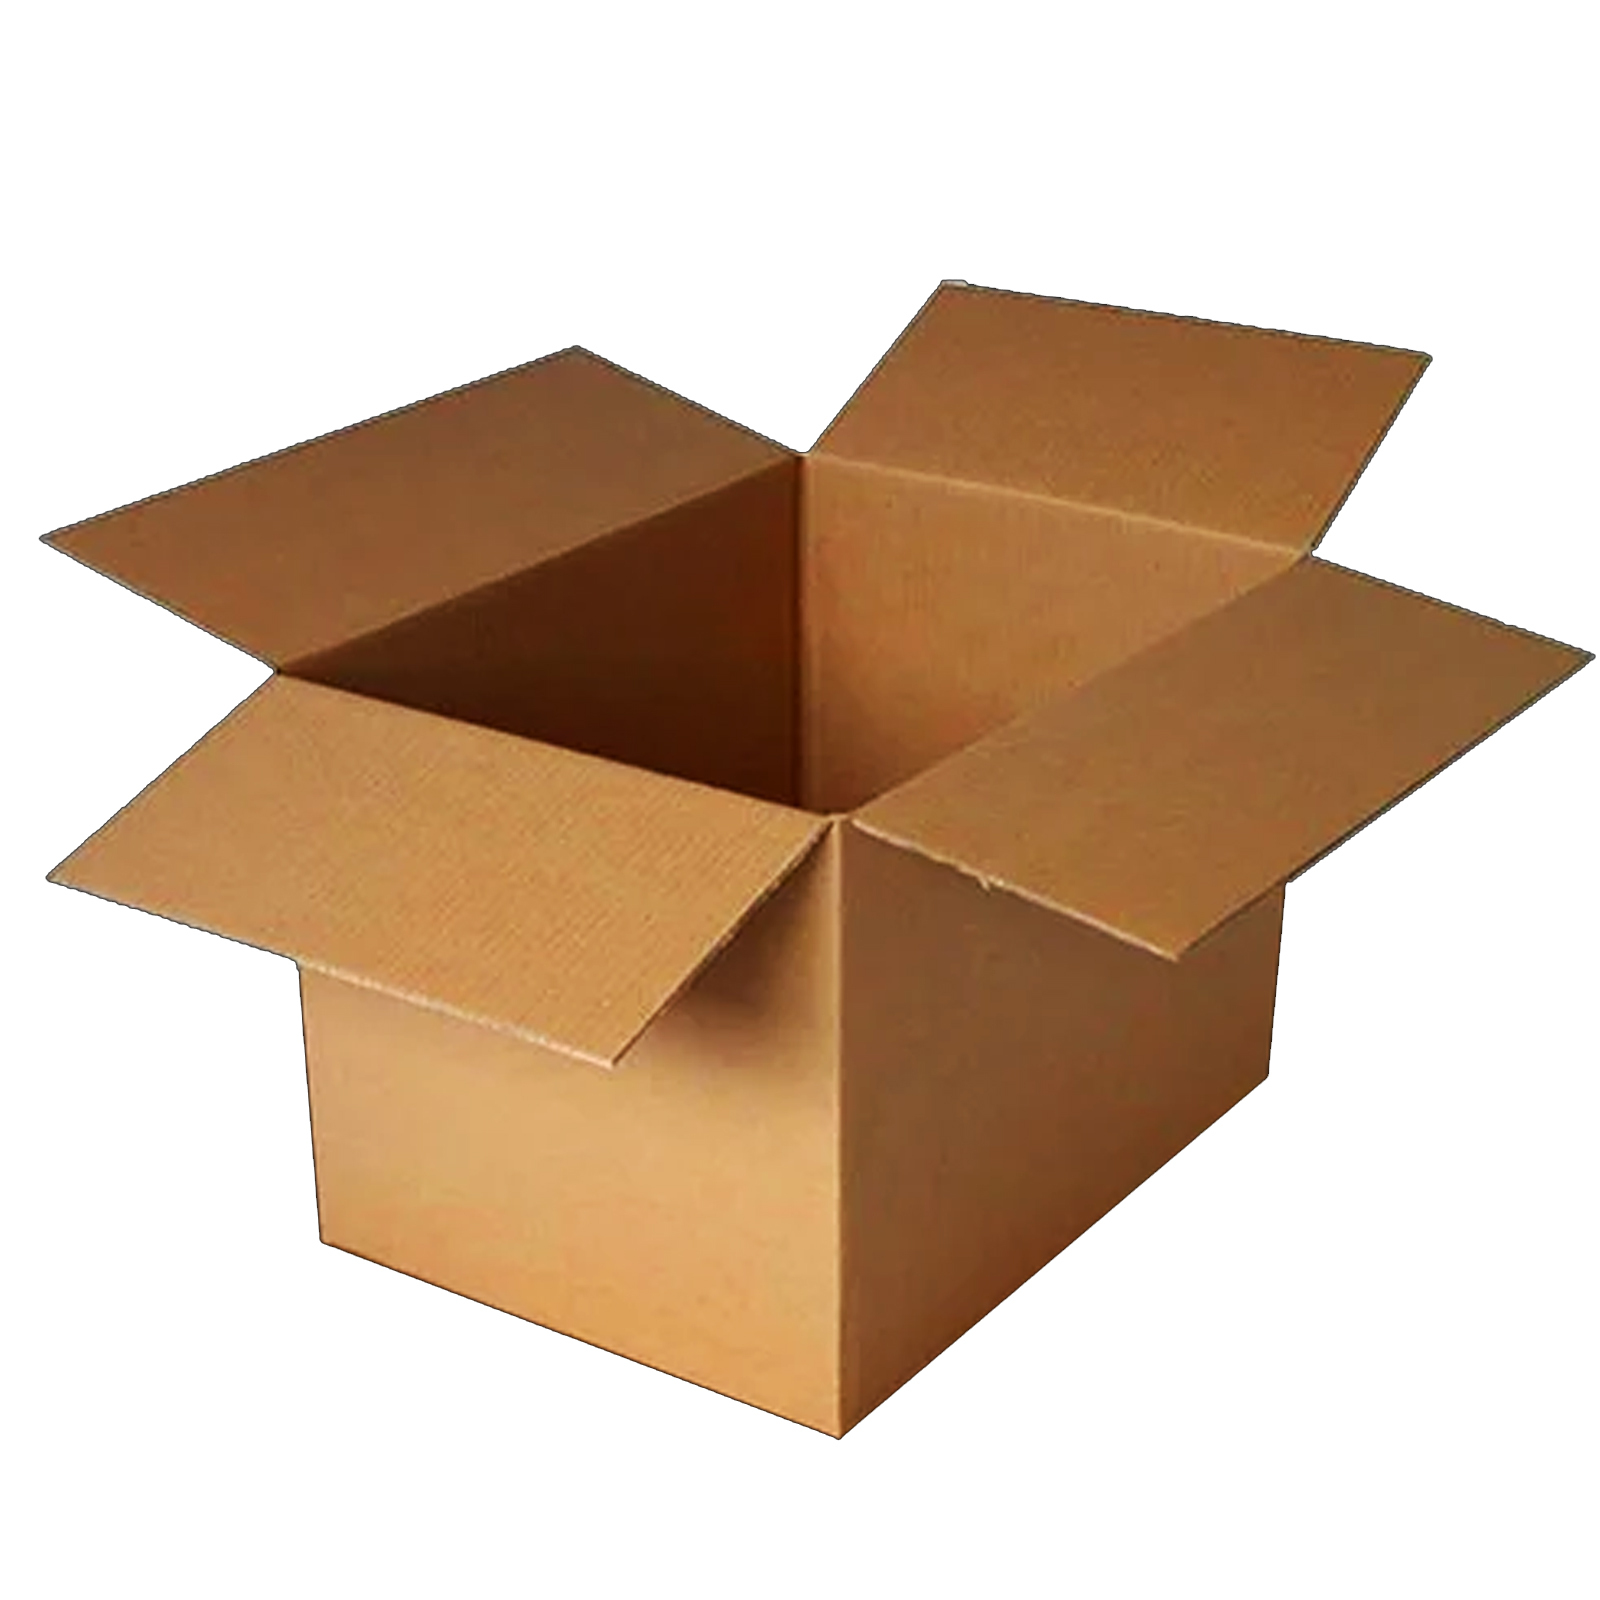 Фото картонной коробки на белом фоне